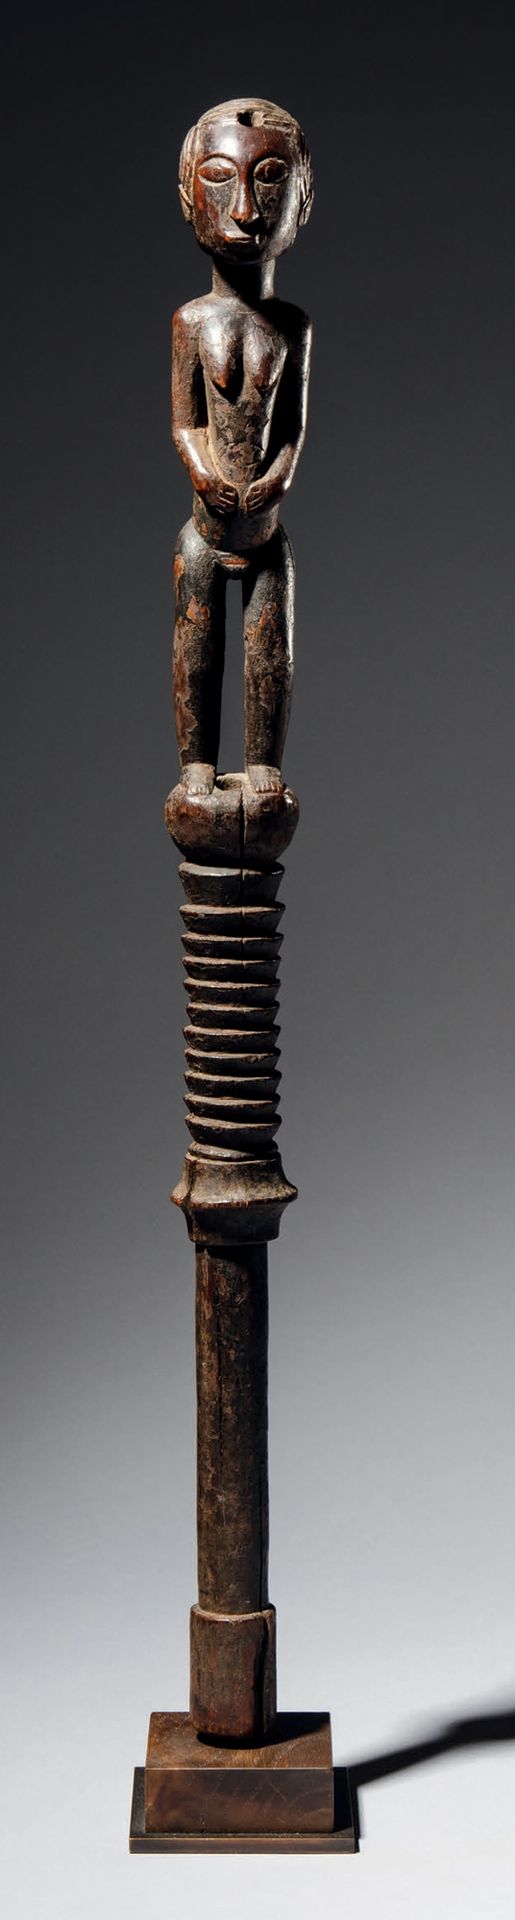 Null - 巴加权杖, 几内亚
木头
H.60厘米
罕见的权杖，直柄，部分有环，顶部代表一个非常精细的站立人物。
额头顶部的一个孔可能是用来放置魔法电荷的。